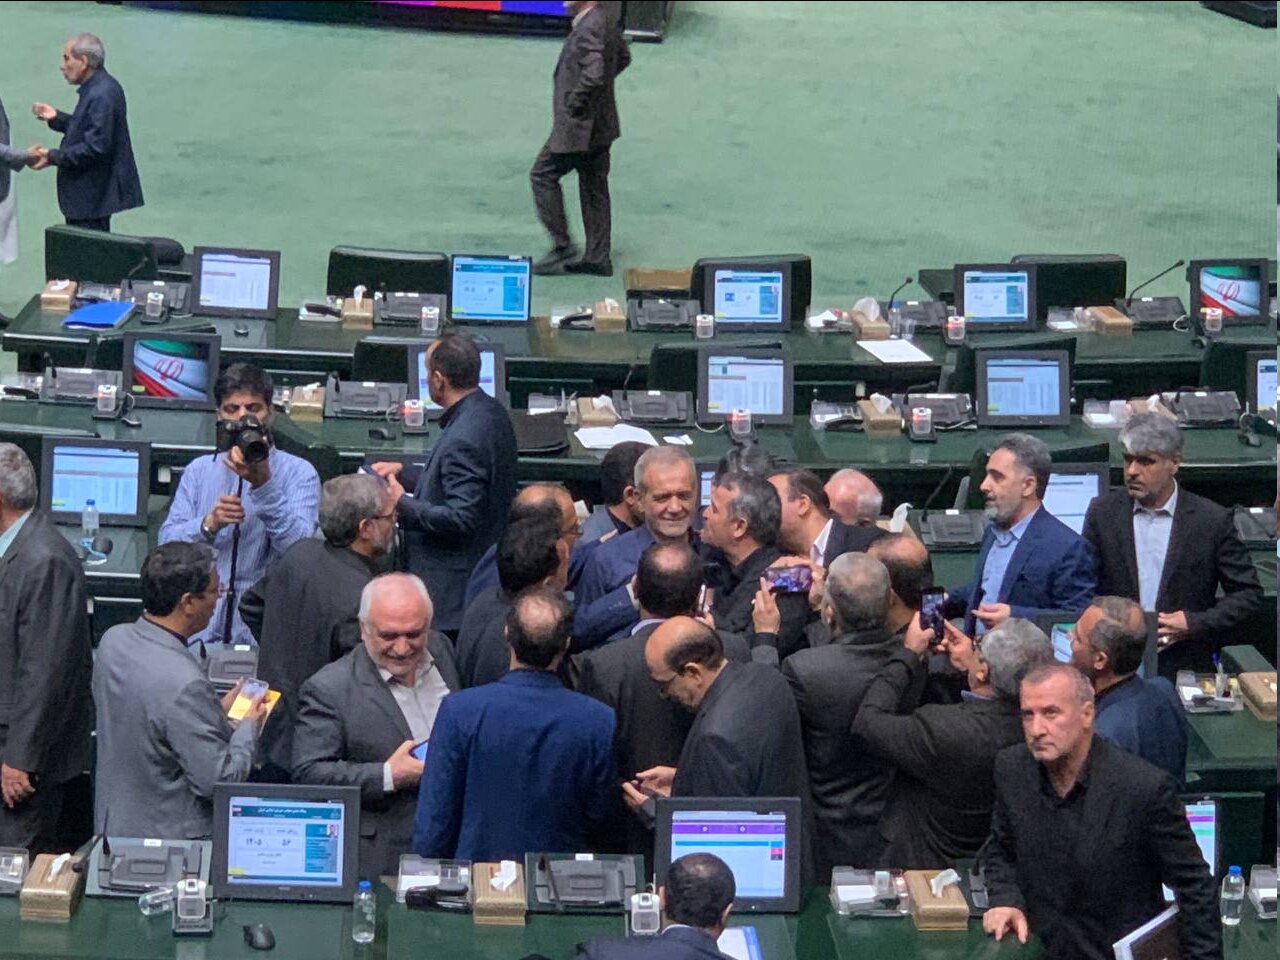 تصاویر خوش و بش نمایندگان مجلس با پزشکیان /بازار سلفی با رئیس جمهوری منتخب داغ بود